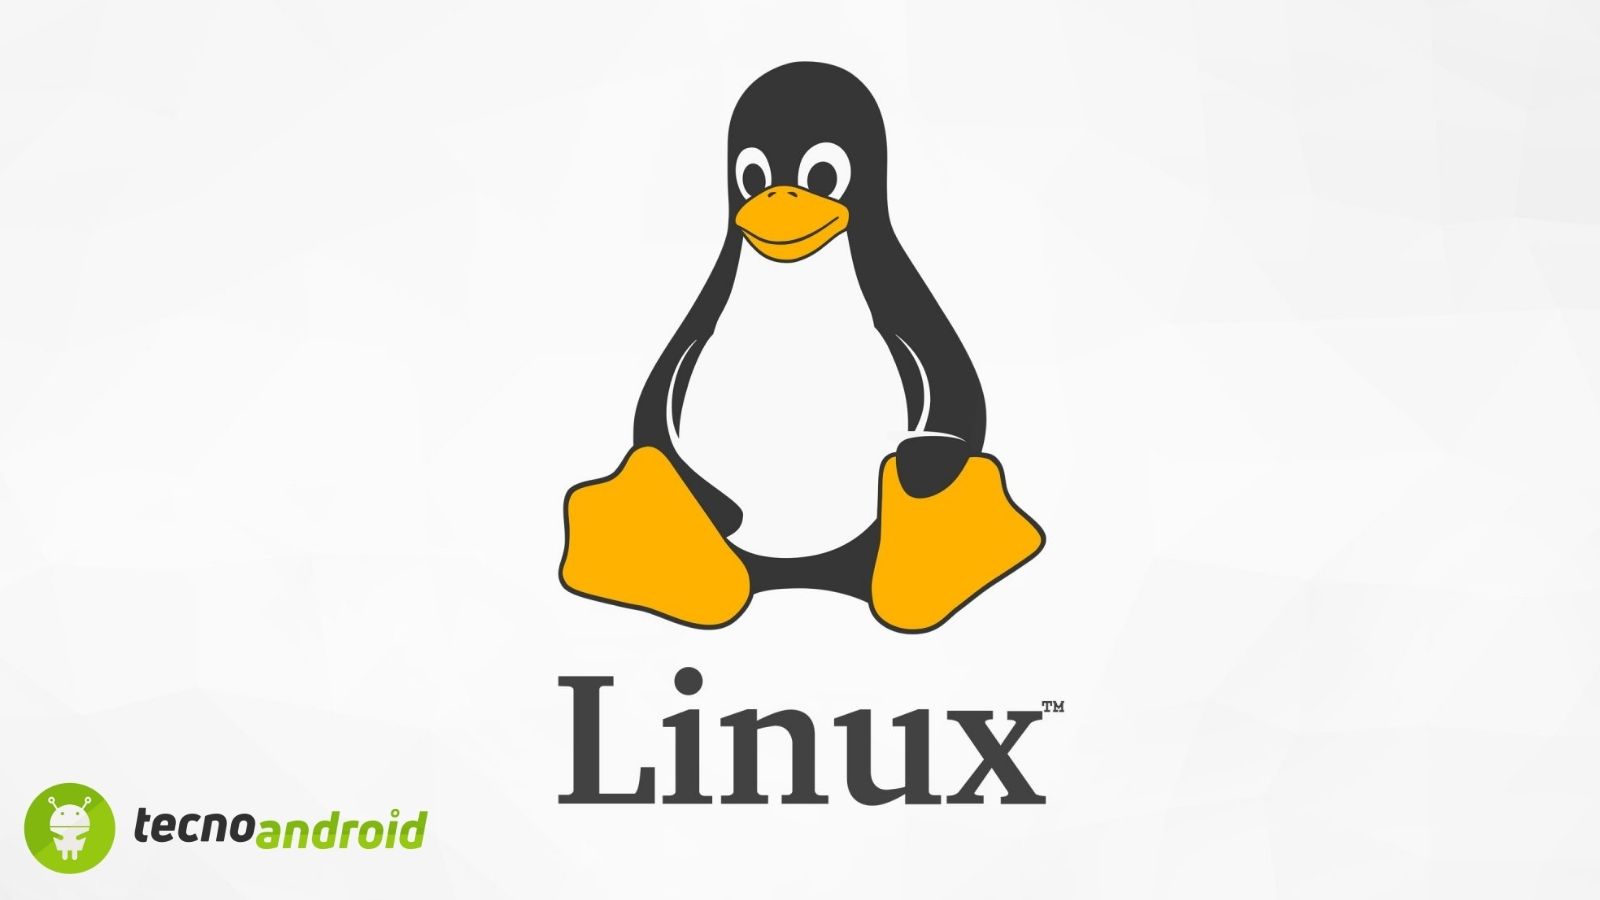 Microsoft porta il comando Linux "sudo" su Windows Server 2025